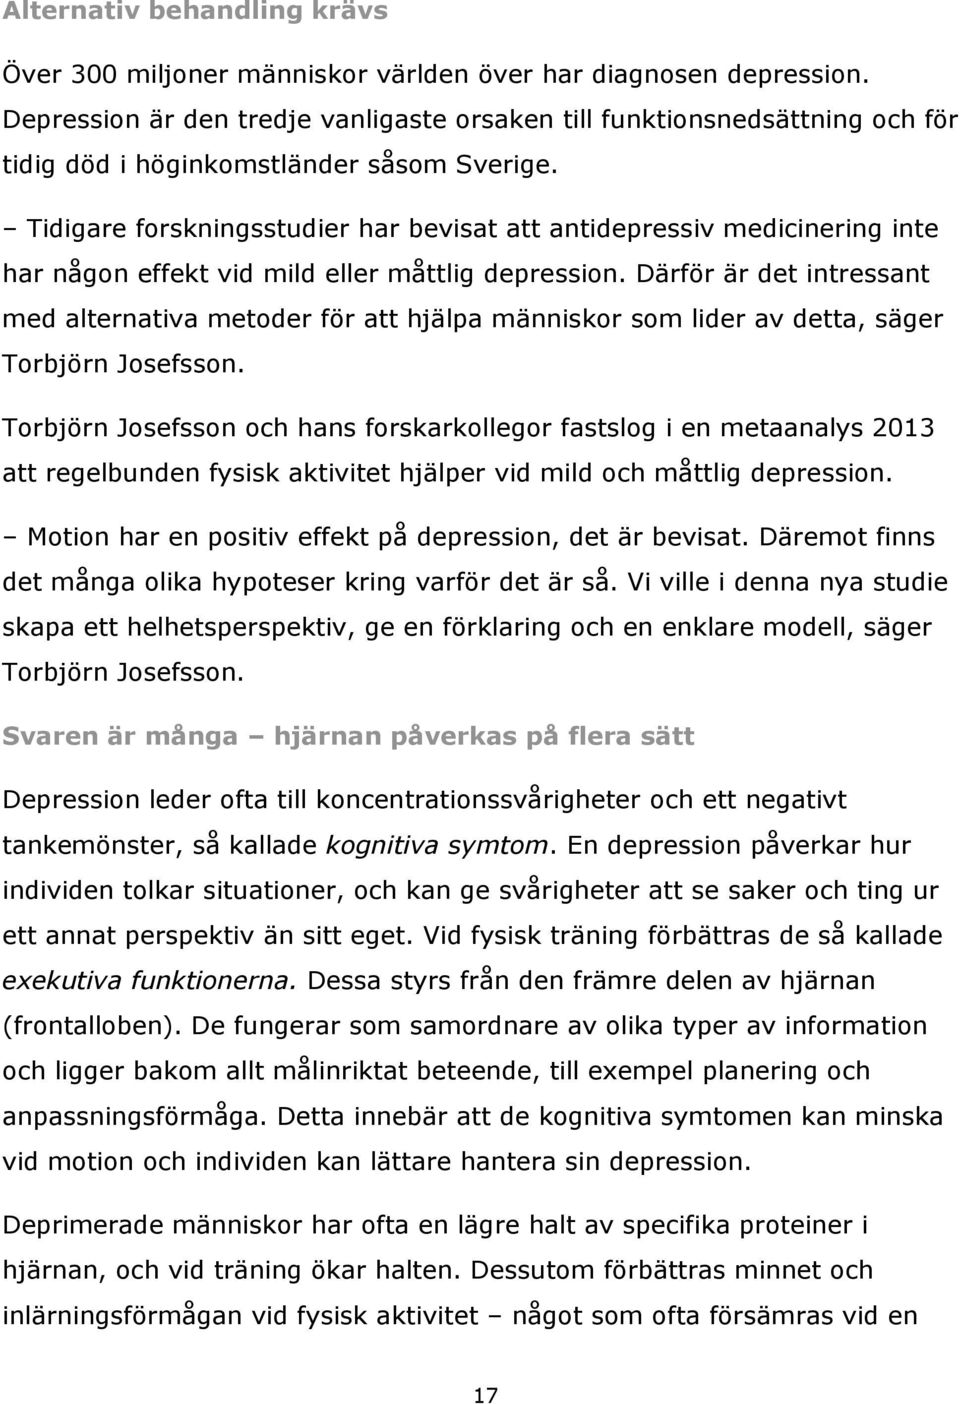 Tidigare forskningsstudier har bevisat att antidepressiv medicinering inte har någon effekt vid mild eller måttlig depression.